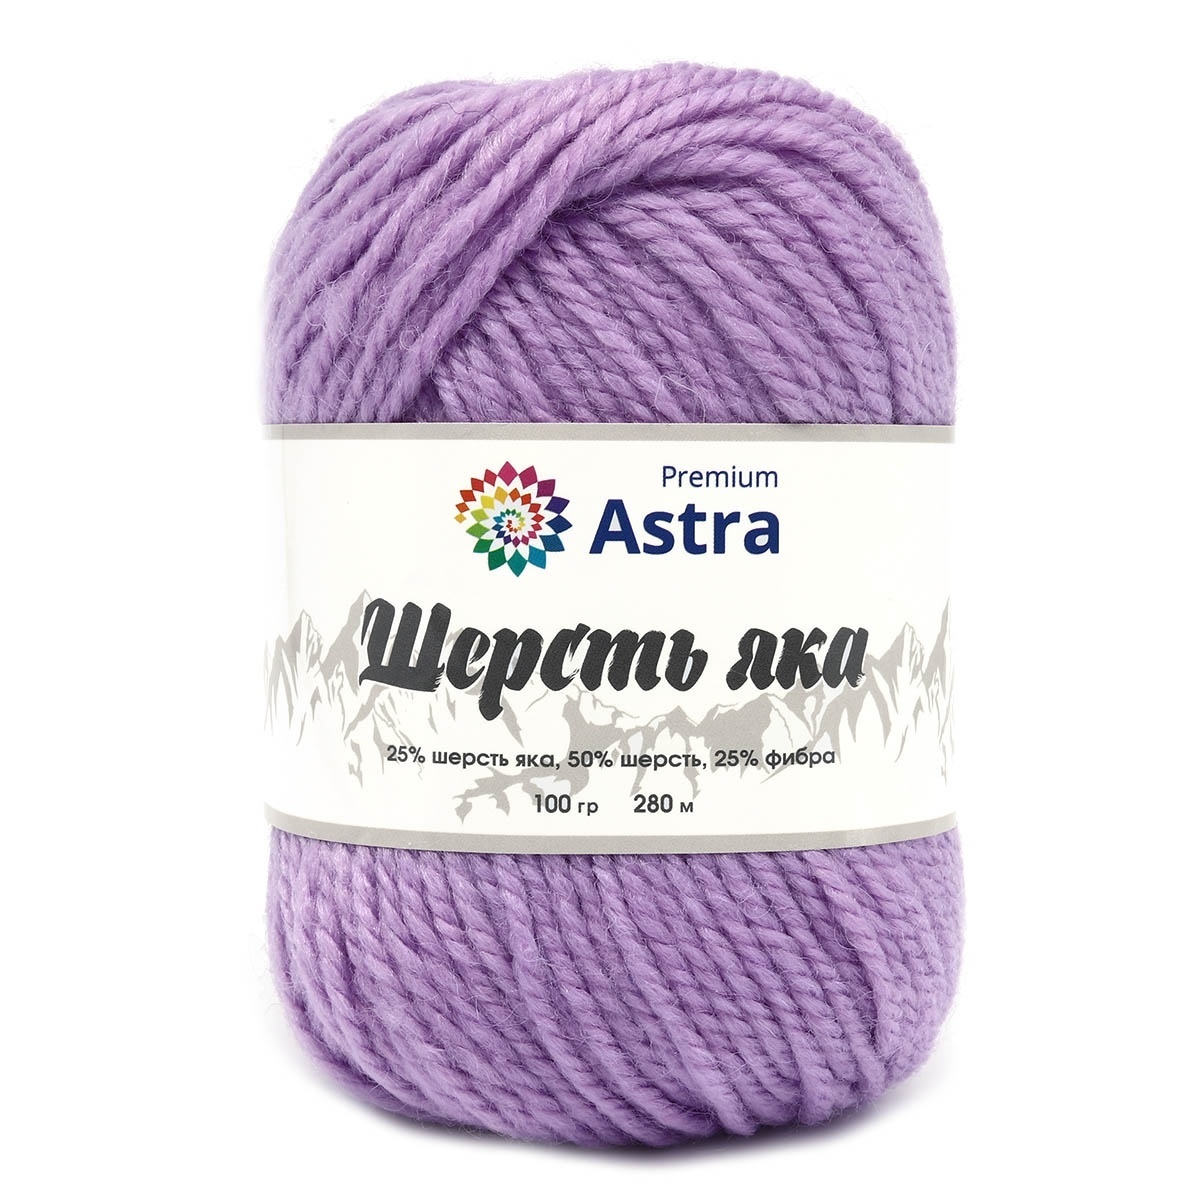 Astra Premium Yak Wool, 25% yak wool, 50% wool, 25% fiber, 2 Skein Value Pack, 200g фото 1